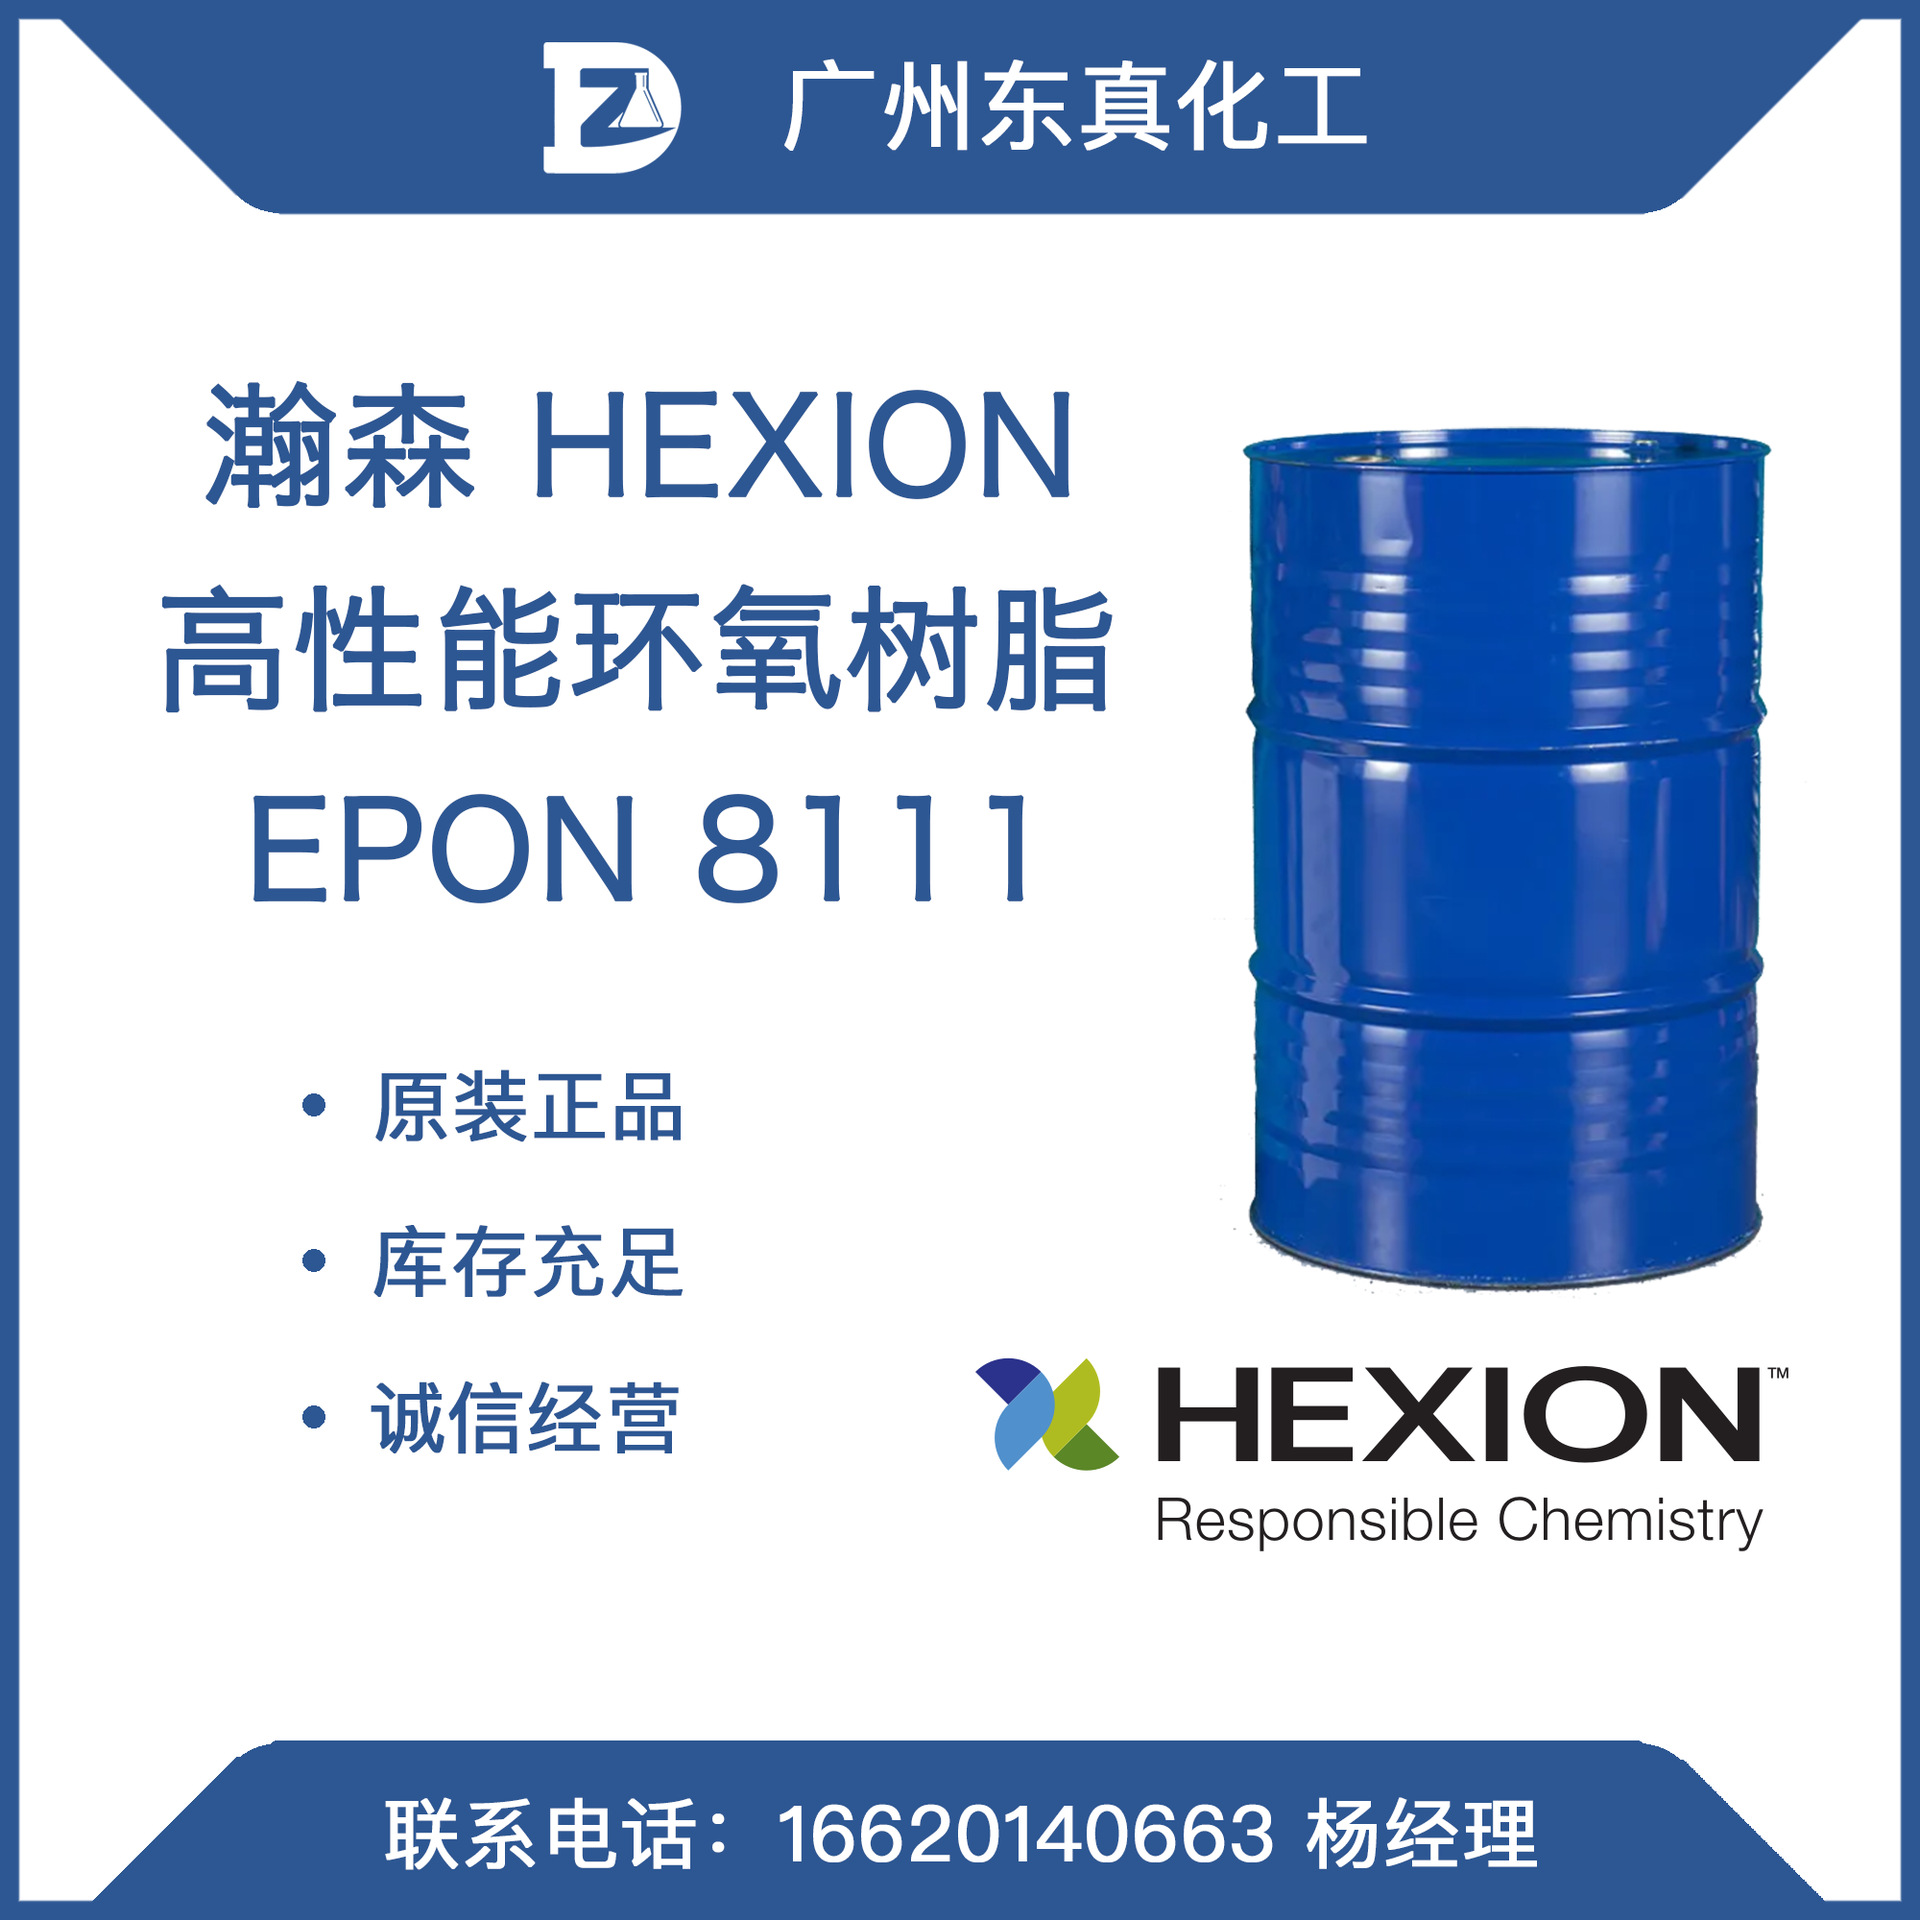 瀚森 高性能环氧树脂 HEXION EPON 8111 芳香族 聚丙烯酸酯